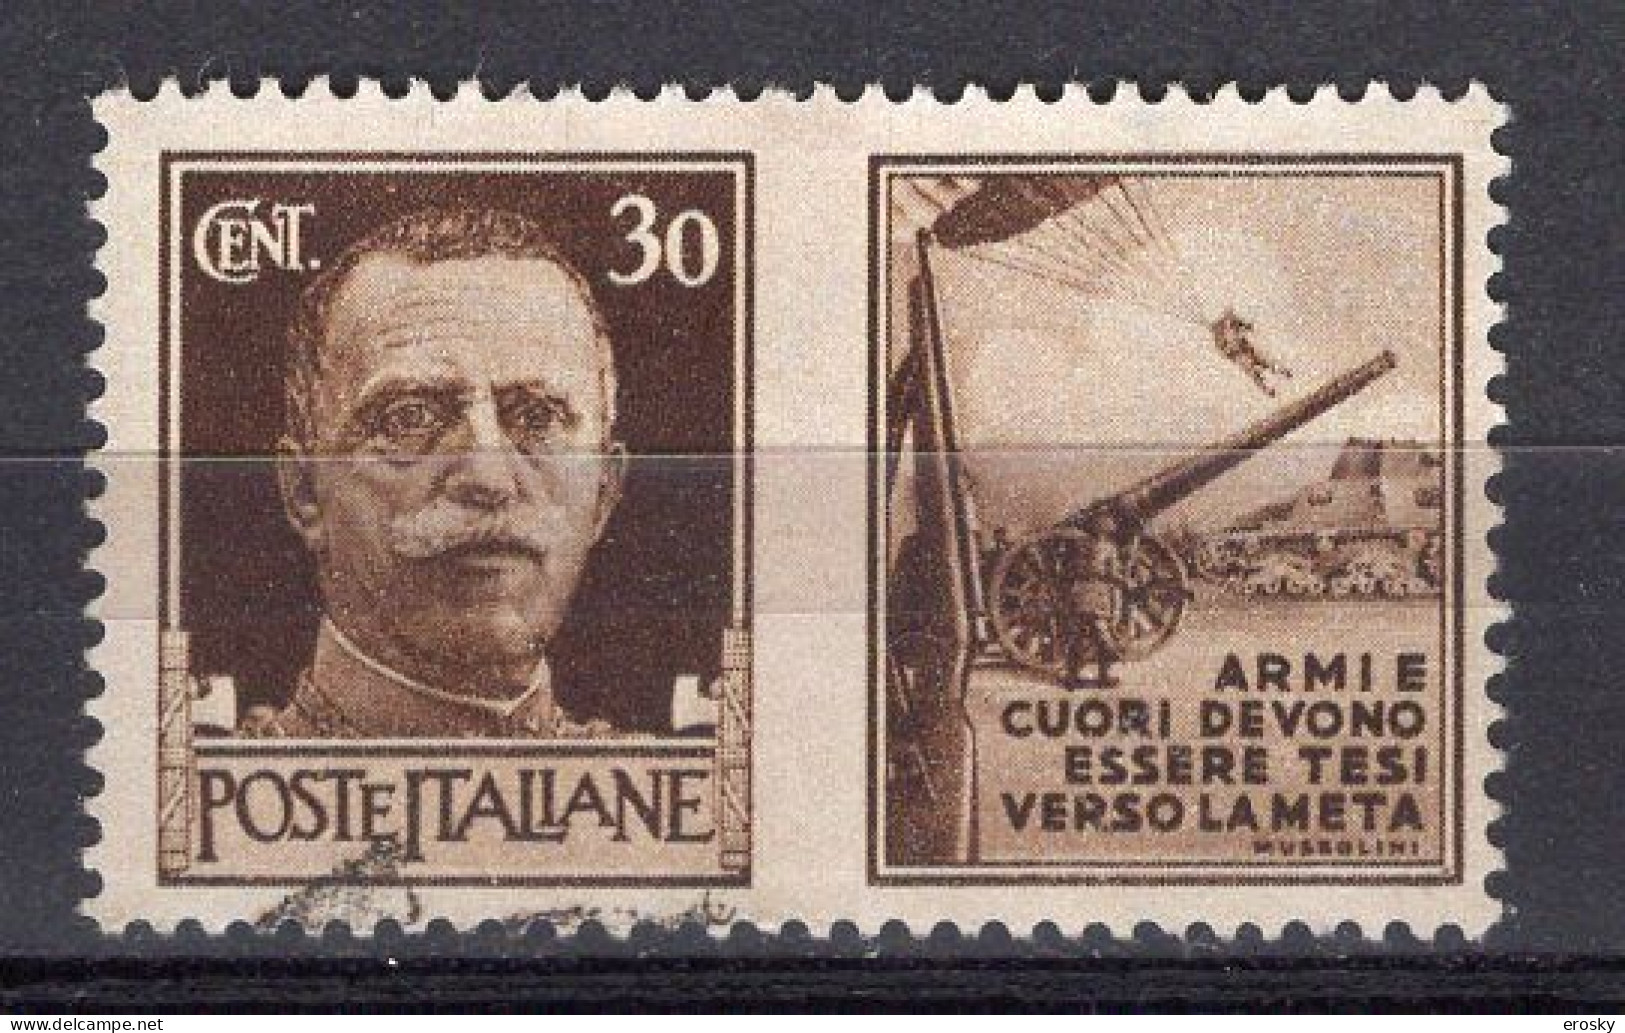 Z5985 - ITALIA REGNO PROPAGANDA DI GUERRA SASSONE N°6 - War Propaganda